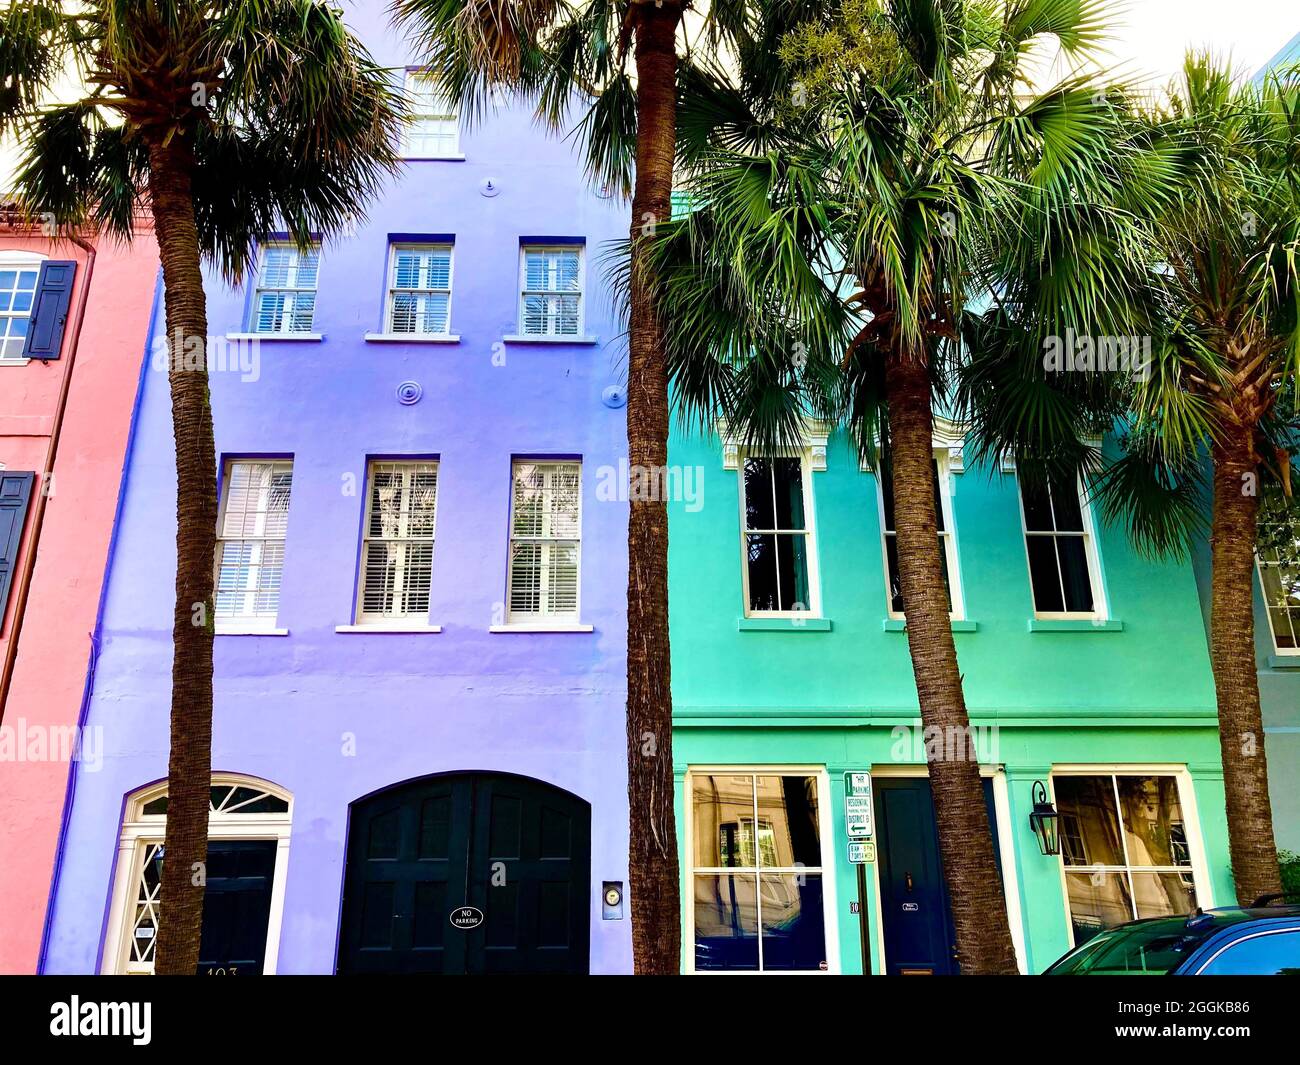 Charleston, South Carolina, Rainbow Row ist eine Serie von 13 bunten historischen Häusern an der East Bay Street. Es stellt die längste Ansammlung georgischer Reihenhäuser in den USA dar. Der Name Rainbow Row wurde nach Pastellfarben geprägt, die während der Restaurierung in den 1930er Jahren gemalt wurden. Das UNESCO-Welterbe-Angebot kam knapp. Stockfoto